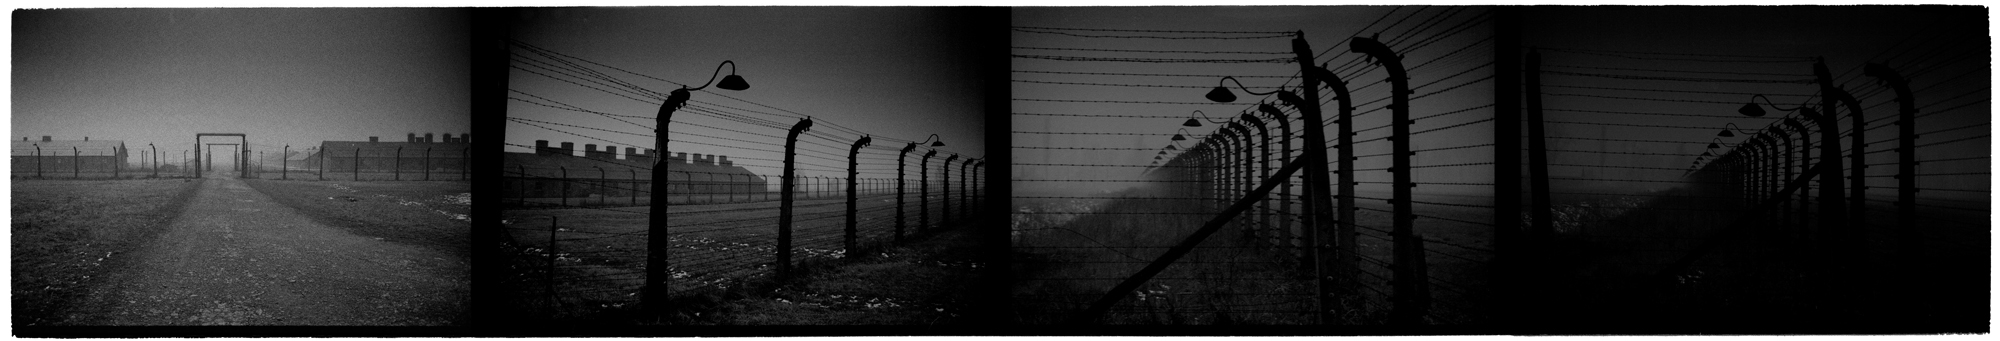 Auschwitz_revisited0008.jpg